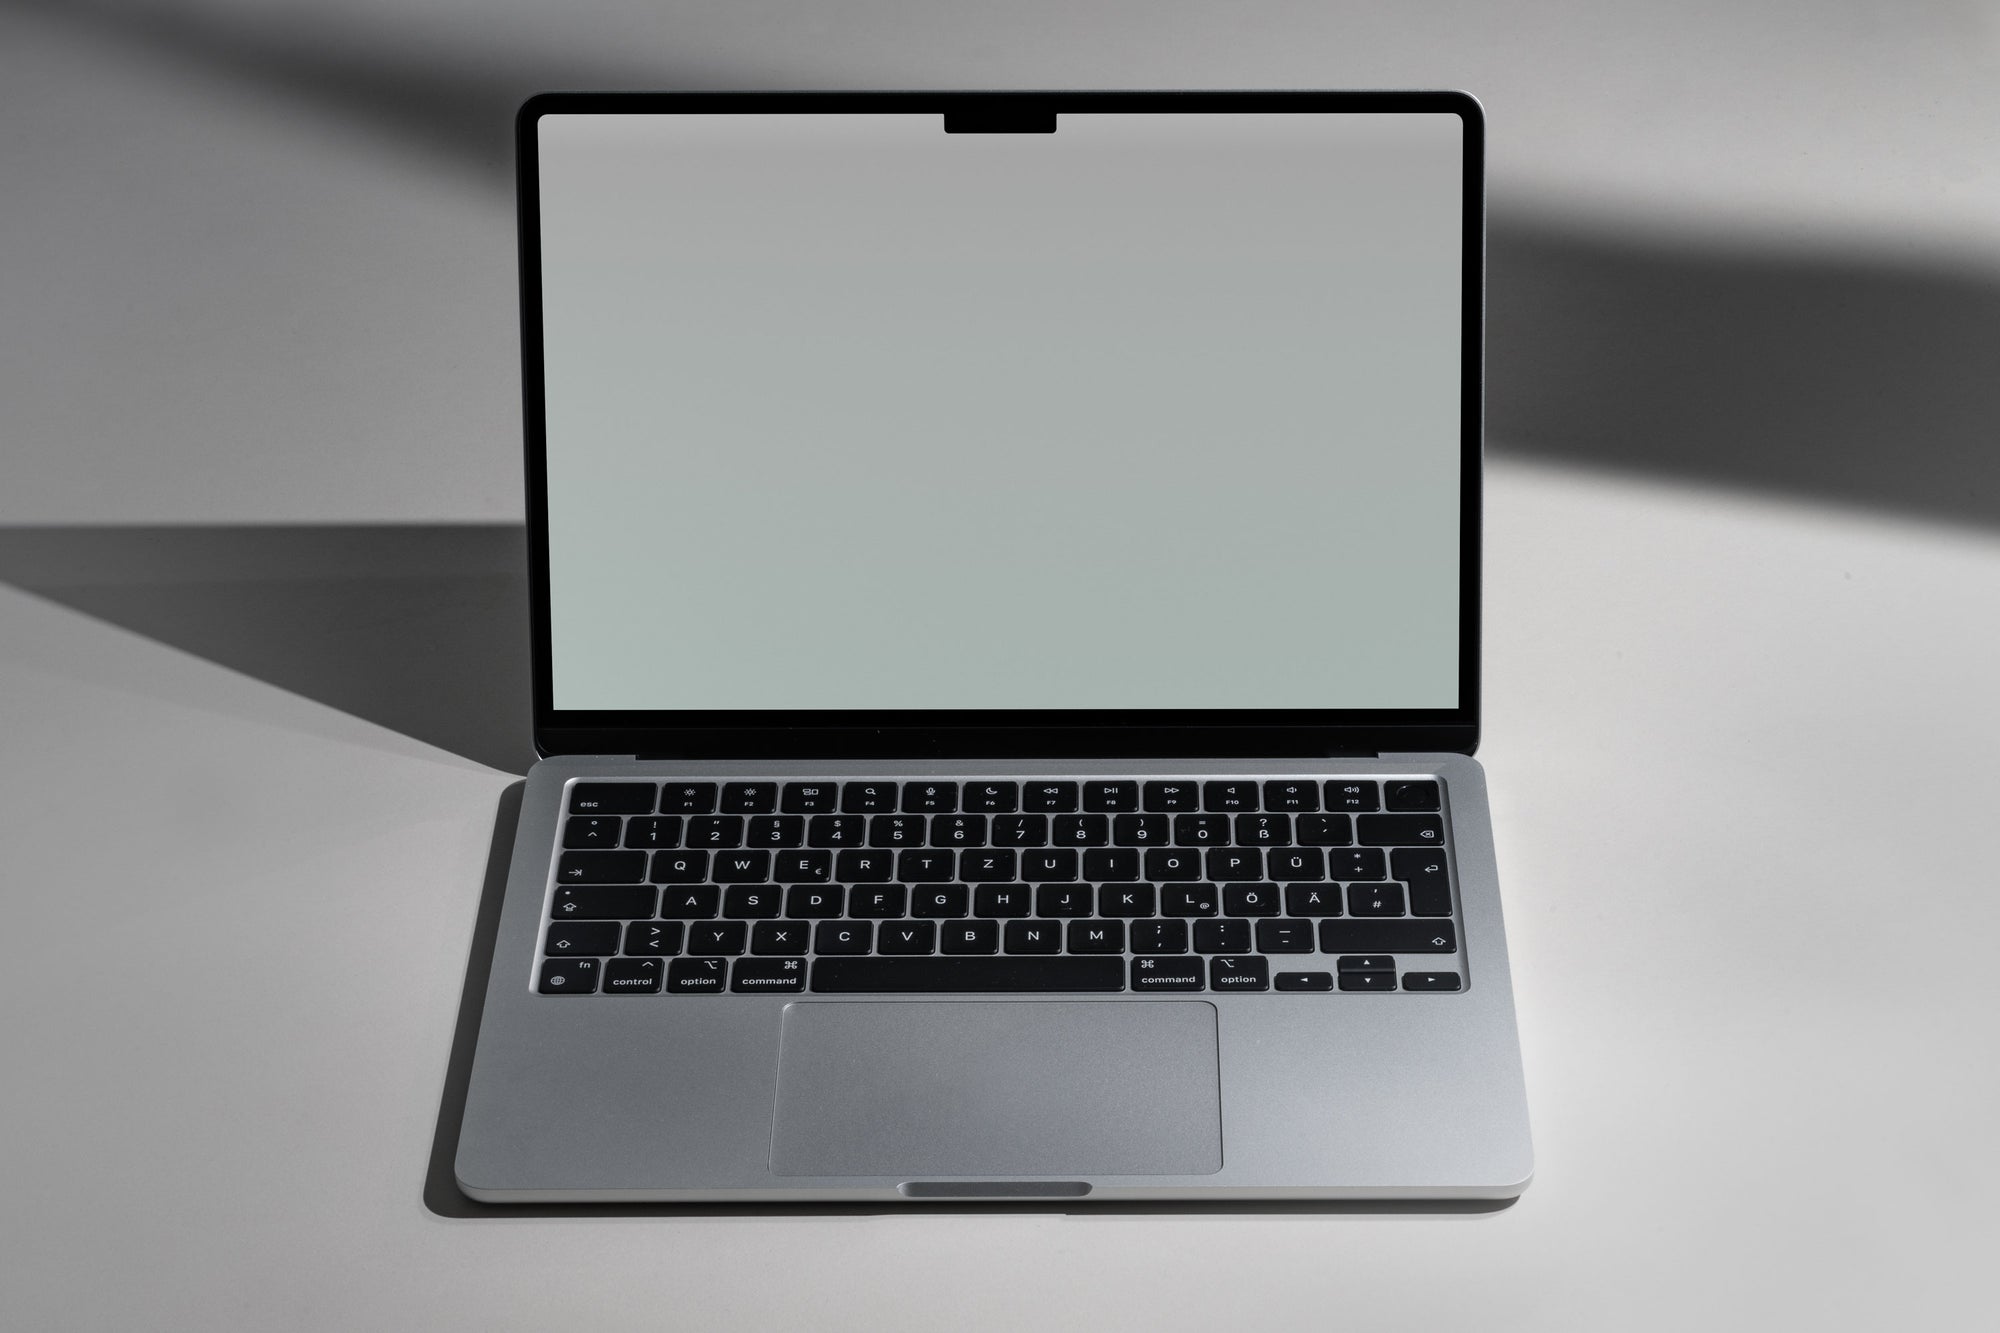 MS01 — MacBook Air